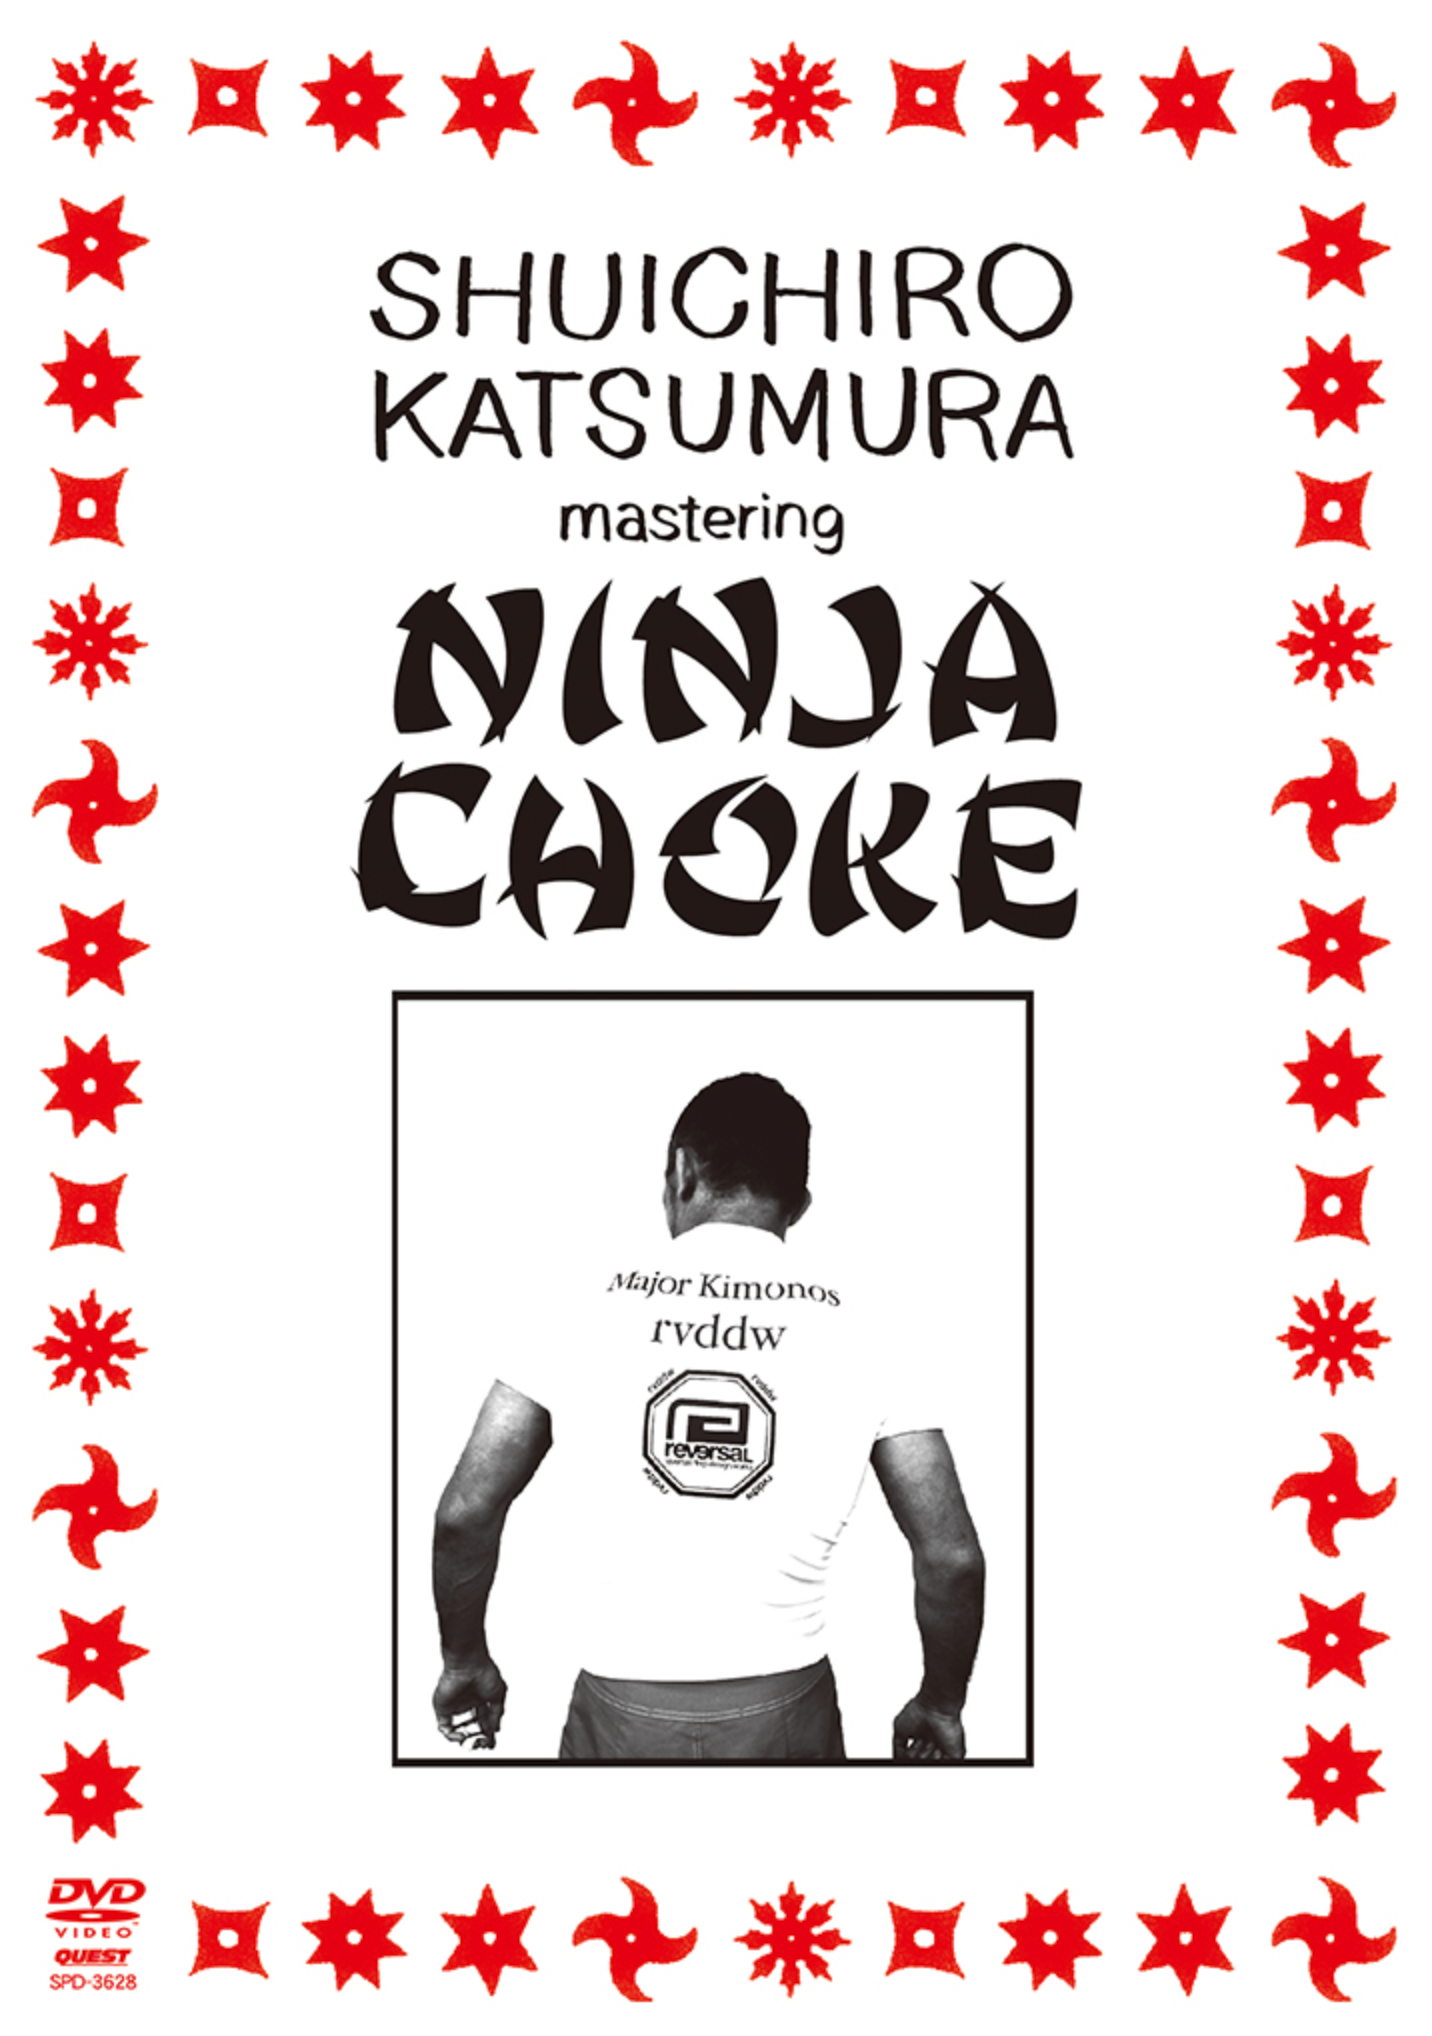 Mastering the Ninja Choke DVD by Shuichiro Katsumura - Budovideos Inc